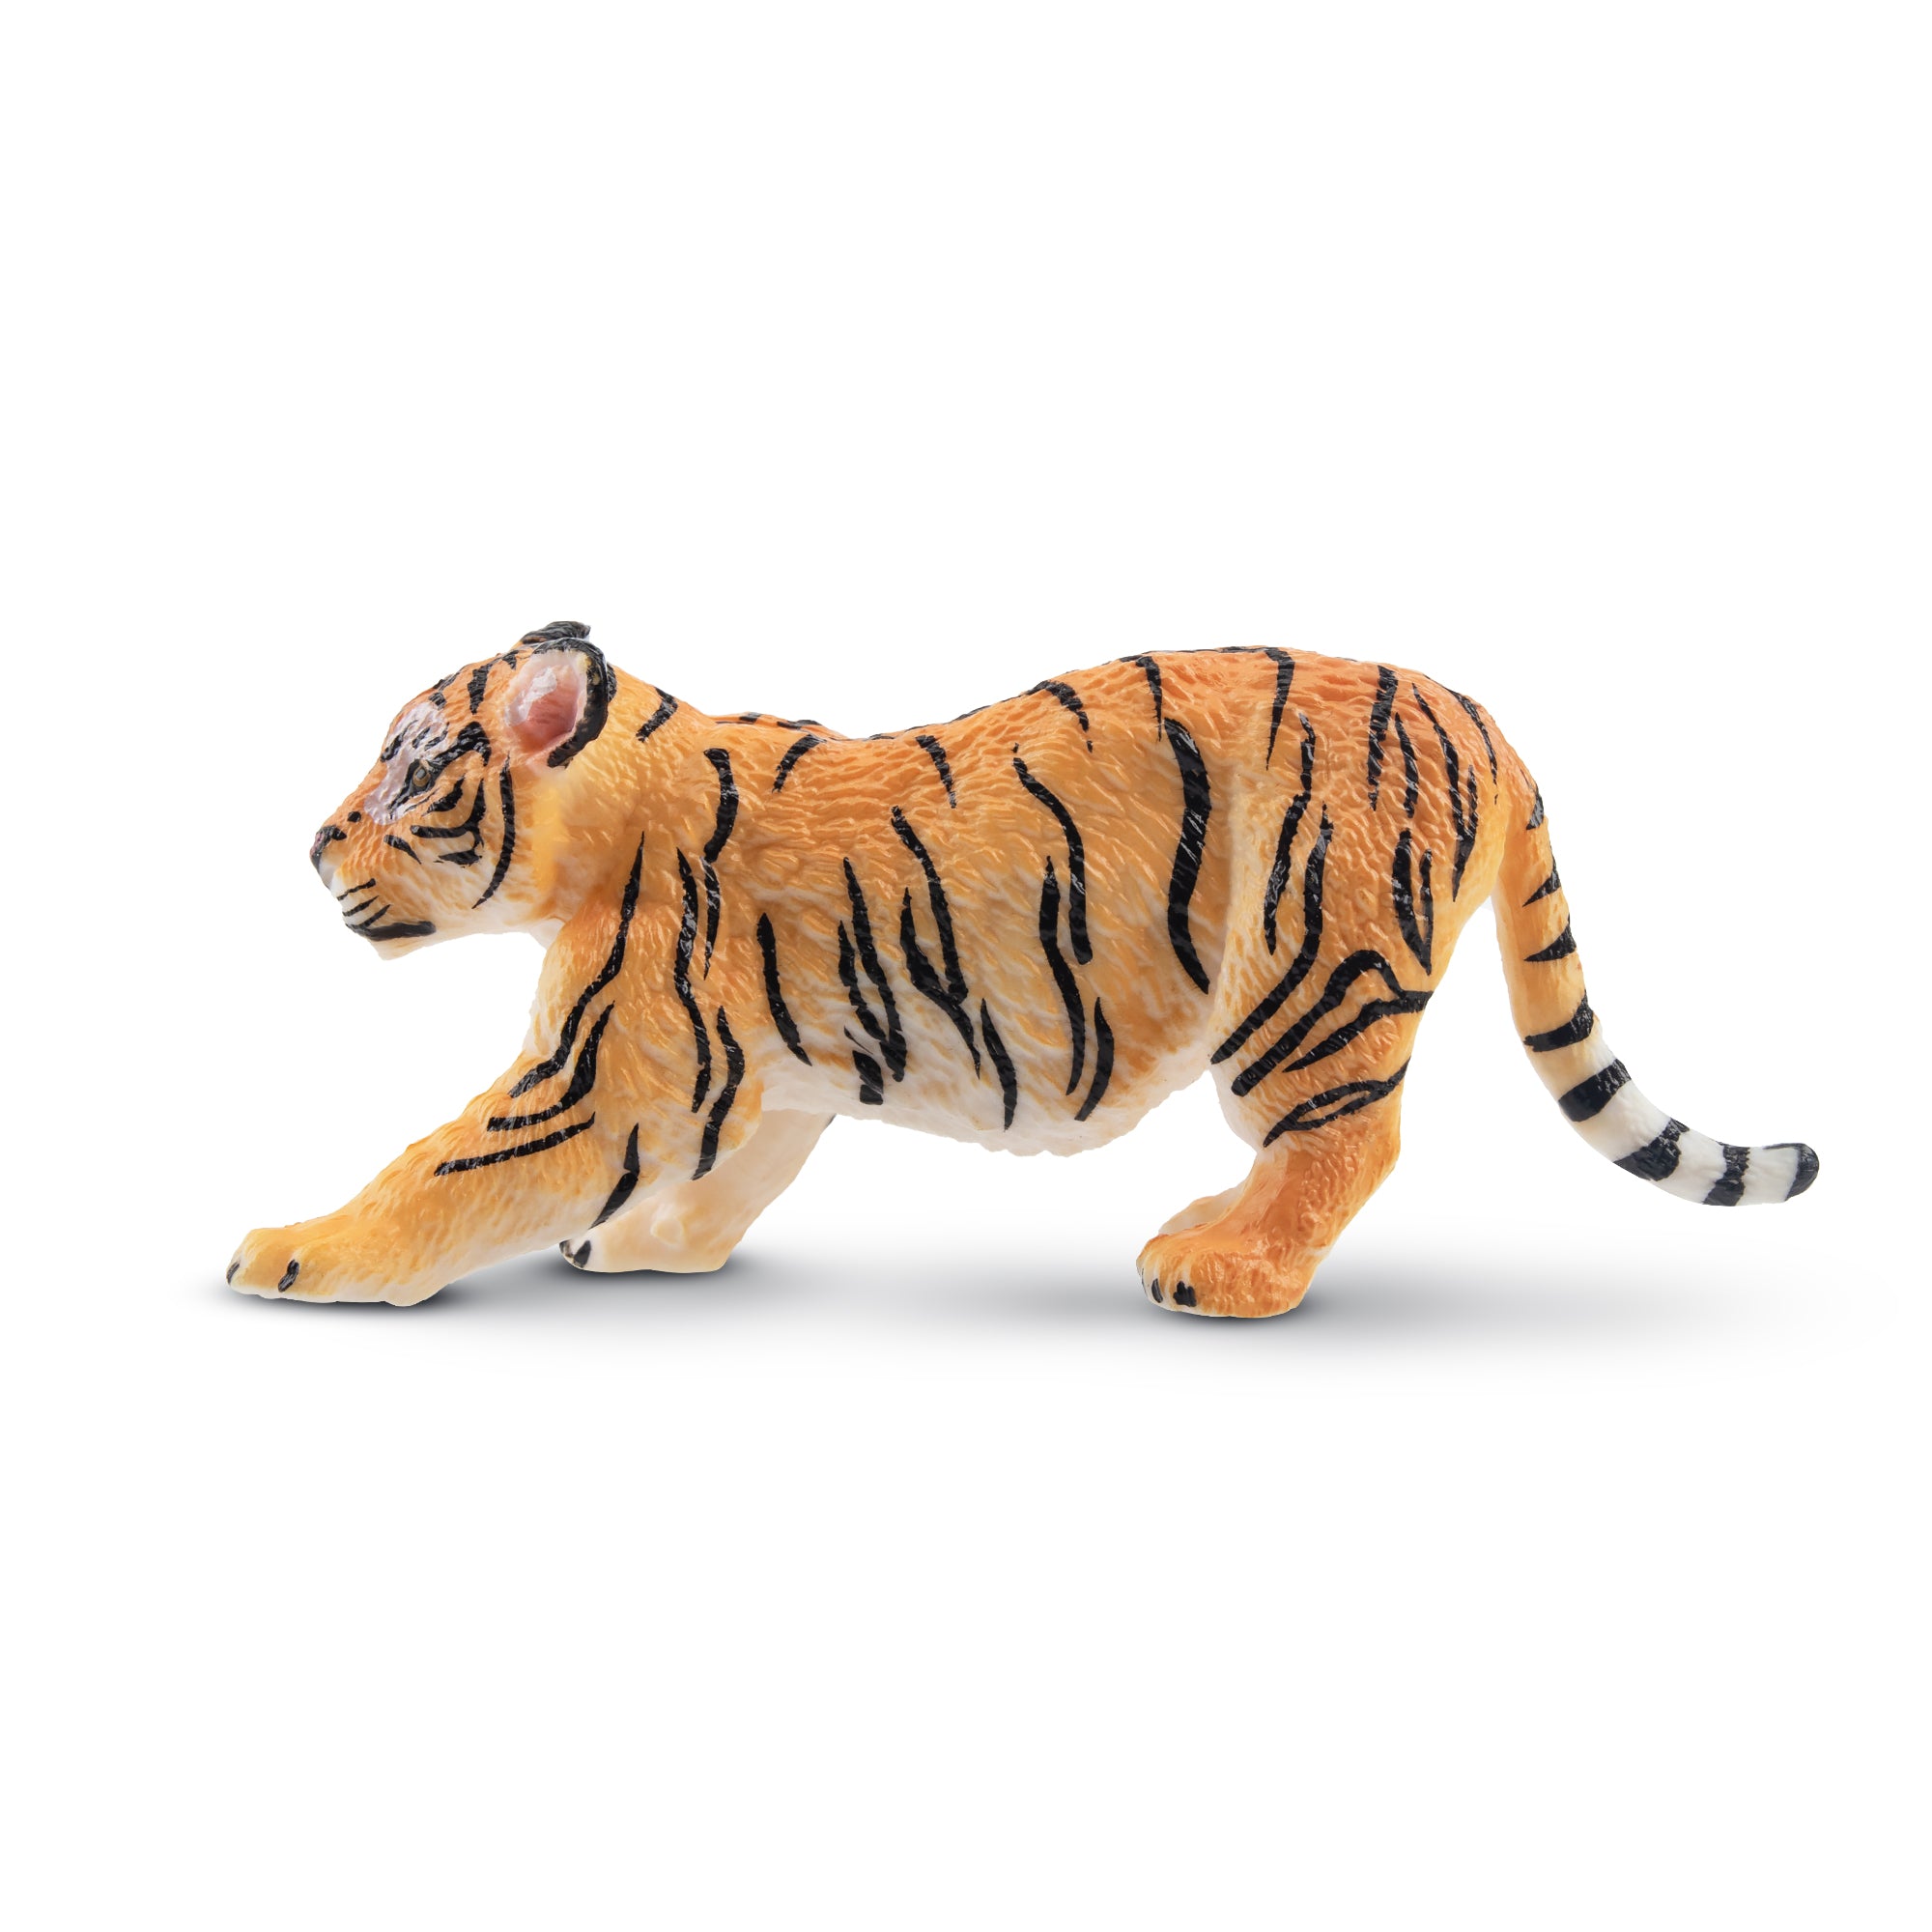 Toymany Stretching Tiger Cub Figurine Toy